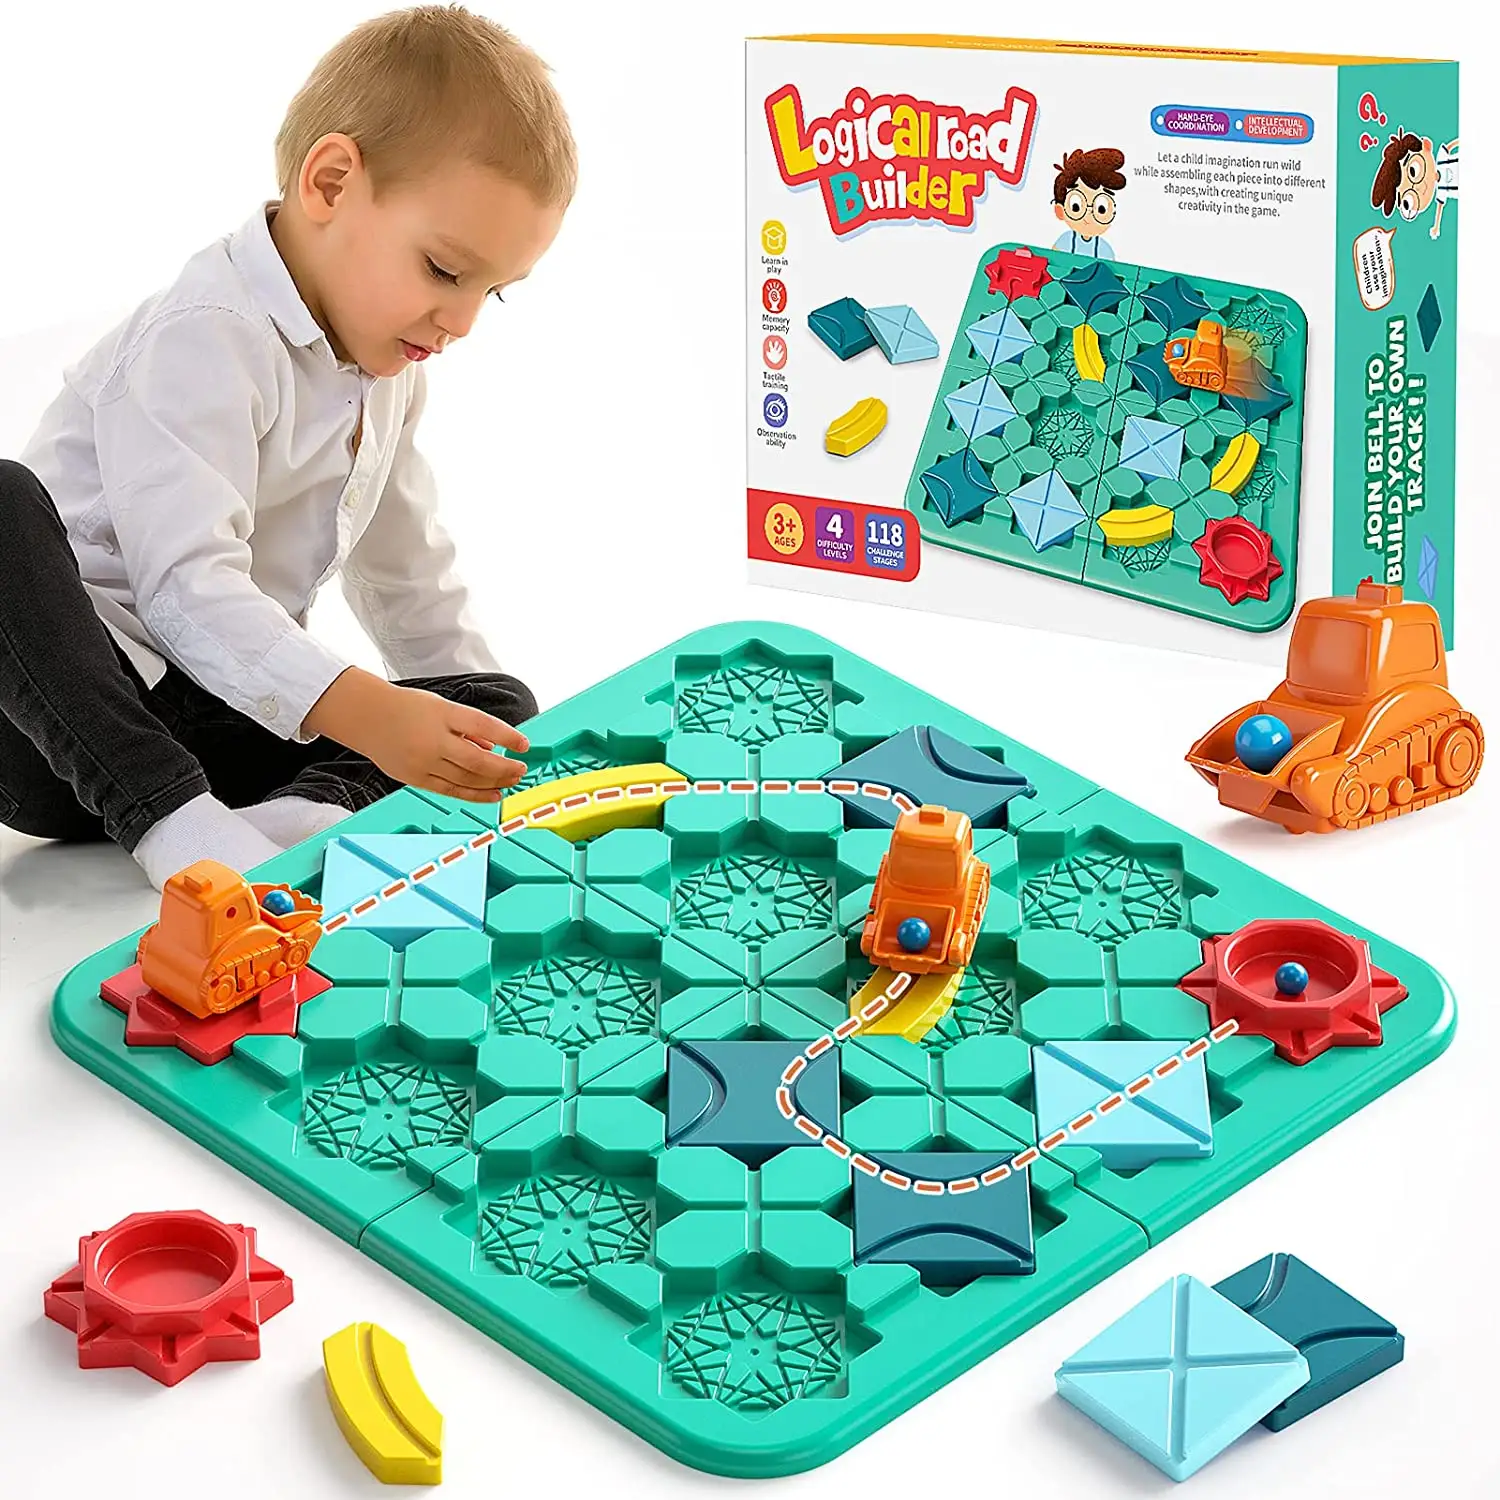 Vente chaude enfants jouets jouets éducatifs constructeur de routes logique jeu de labyrinthe jeu de construction de routes